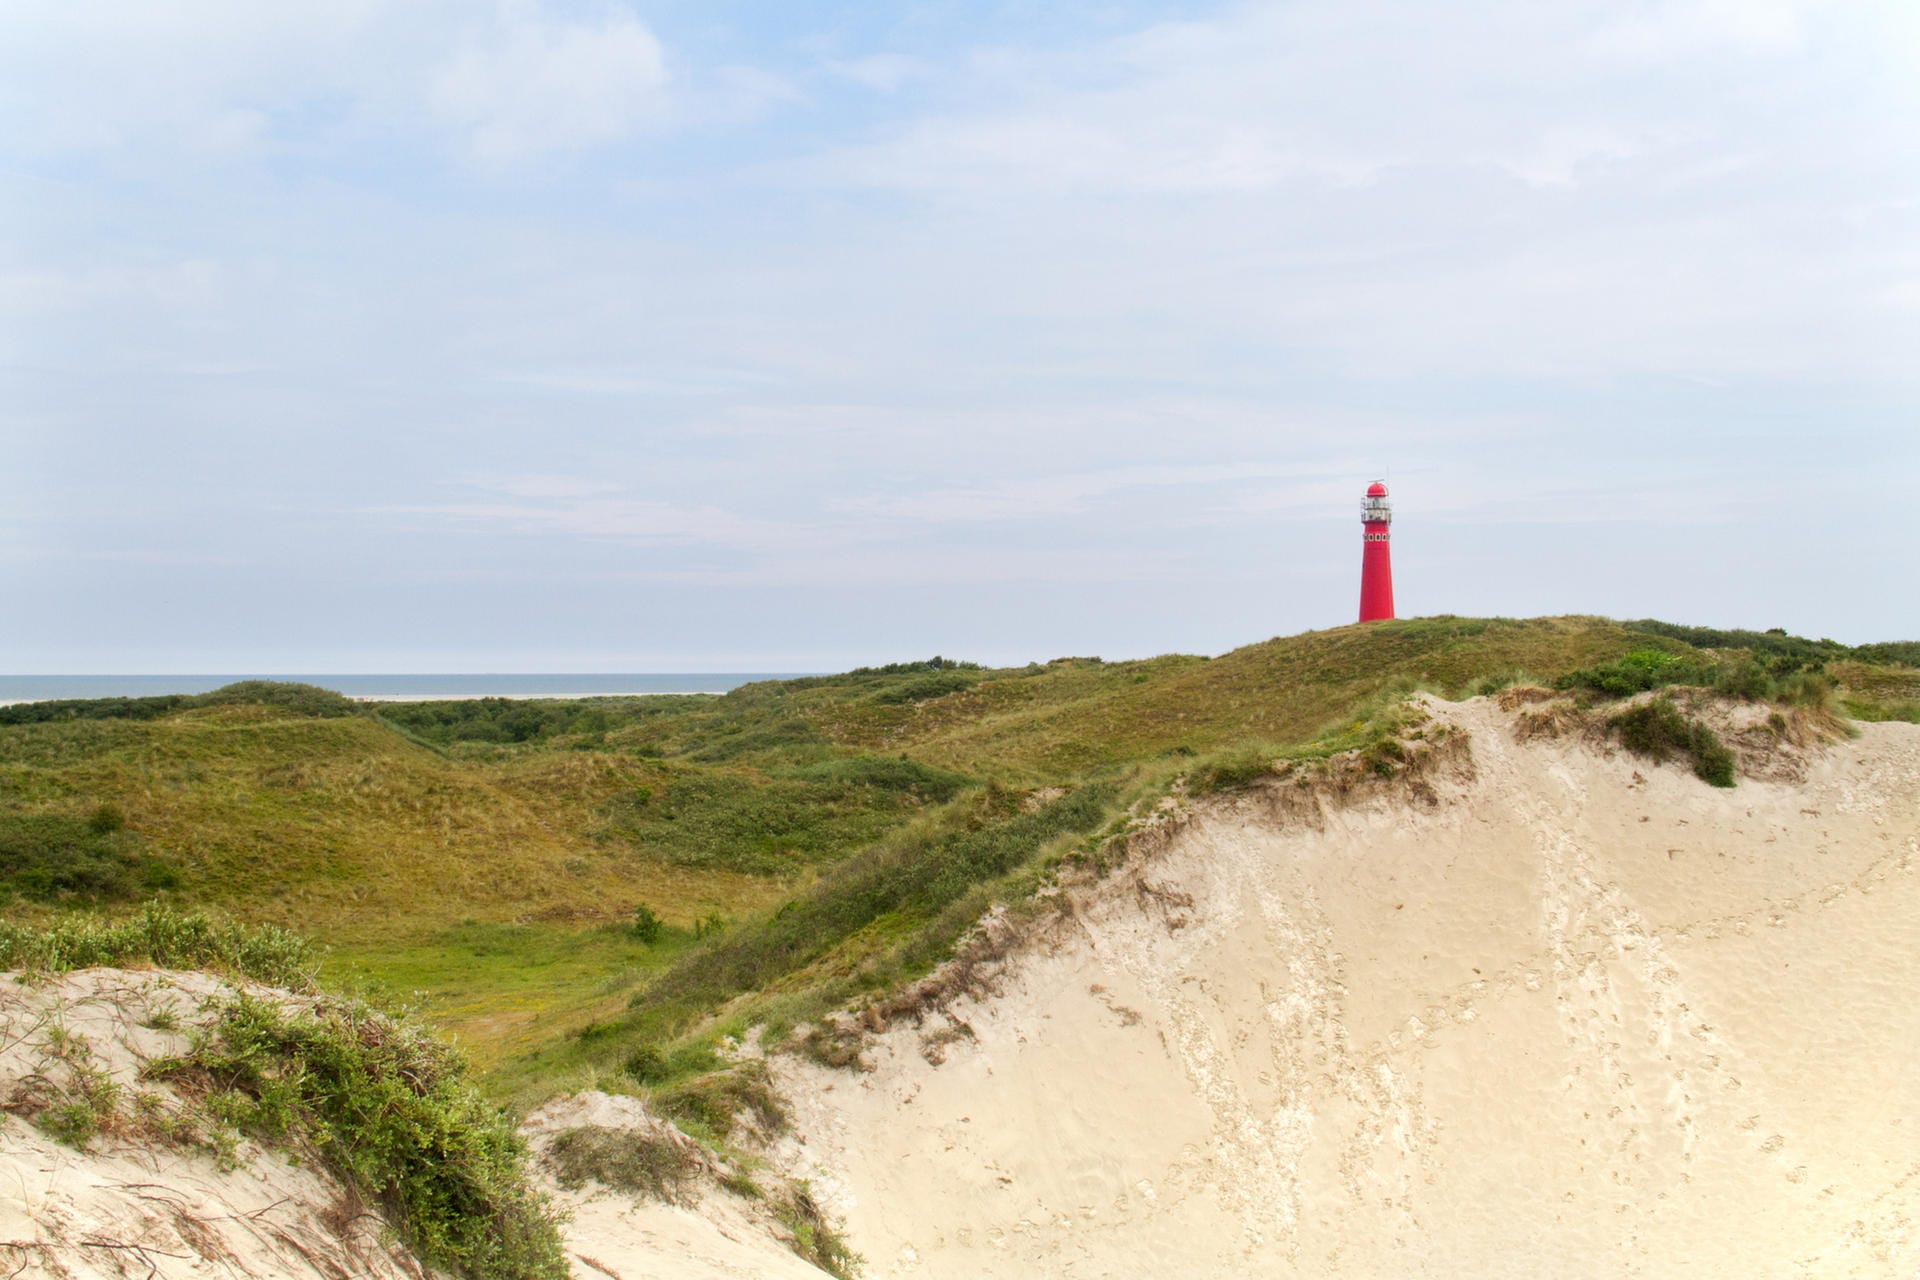 Dünen auf Schiermonnikoog: Mit rund 200 Meter ist der Strand auf Schiermonnikoog einer der breitesten Europas.